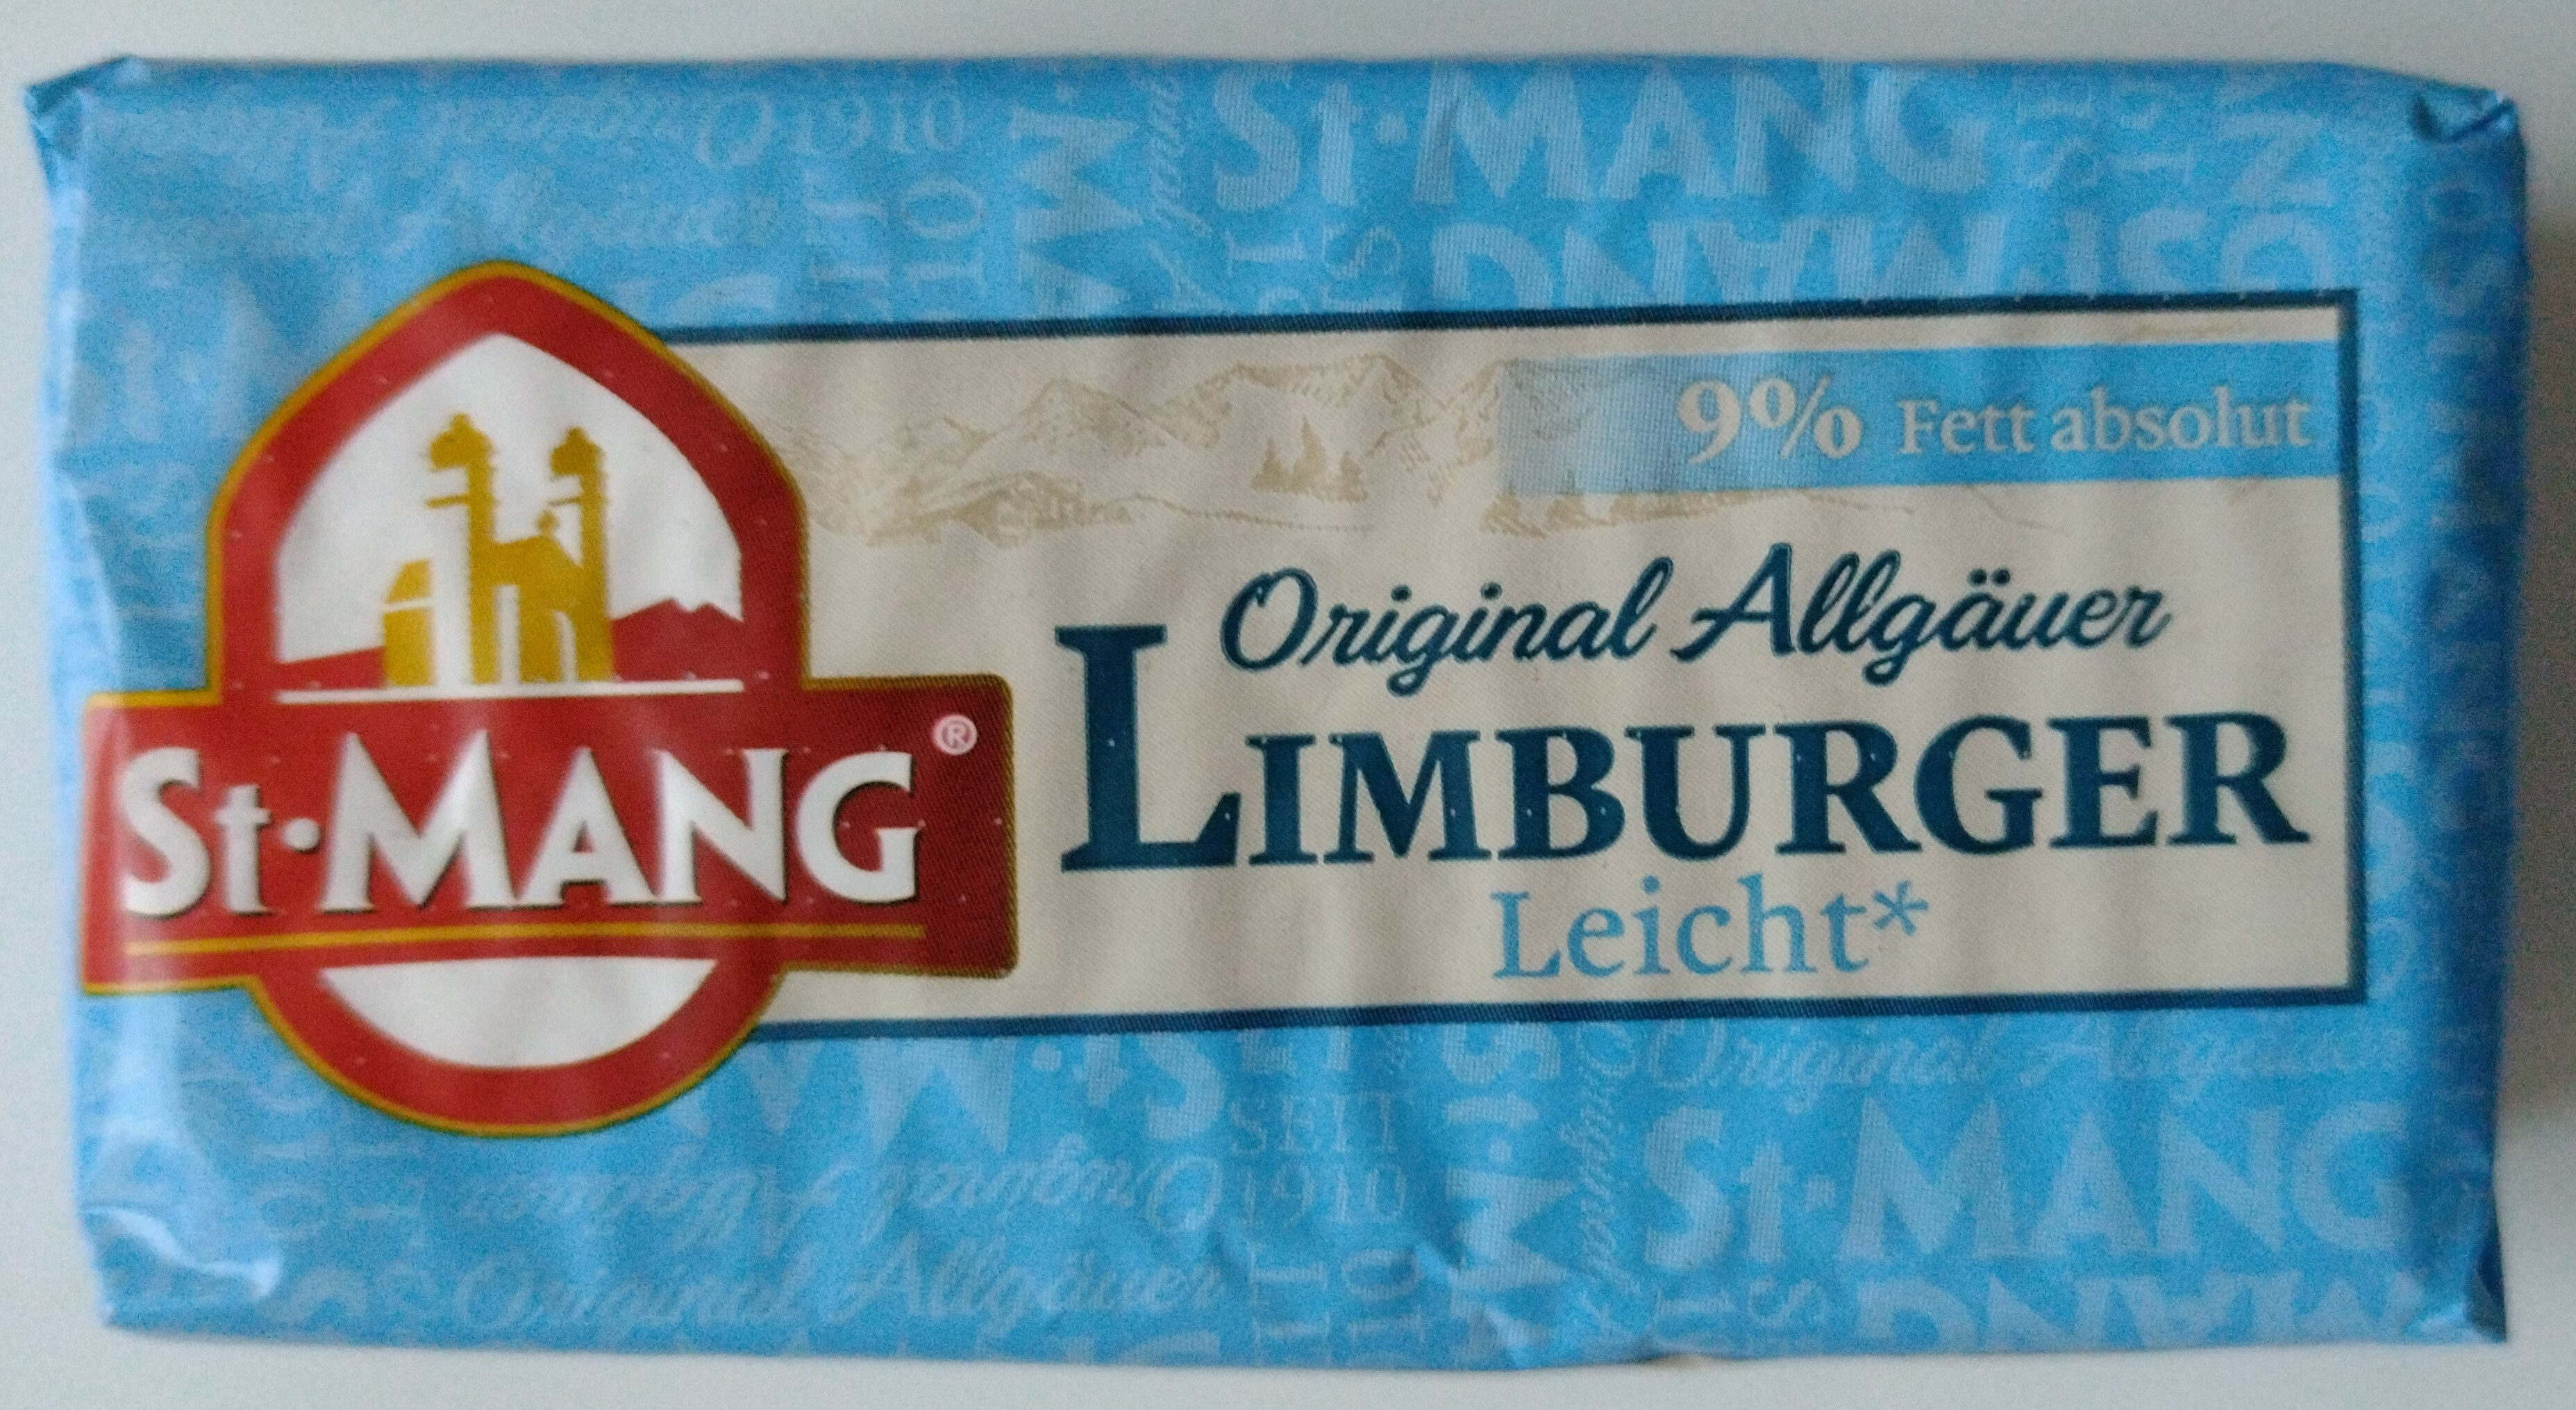 Käse - Limburger Leicht 9% Fett absolut - Prodotto - de